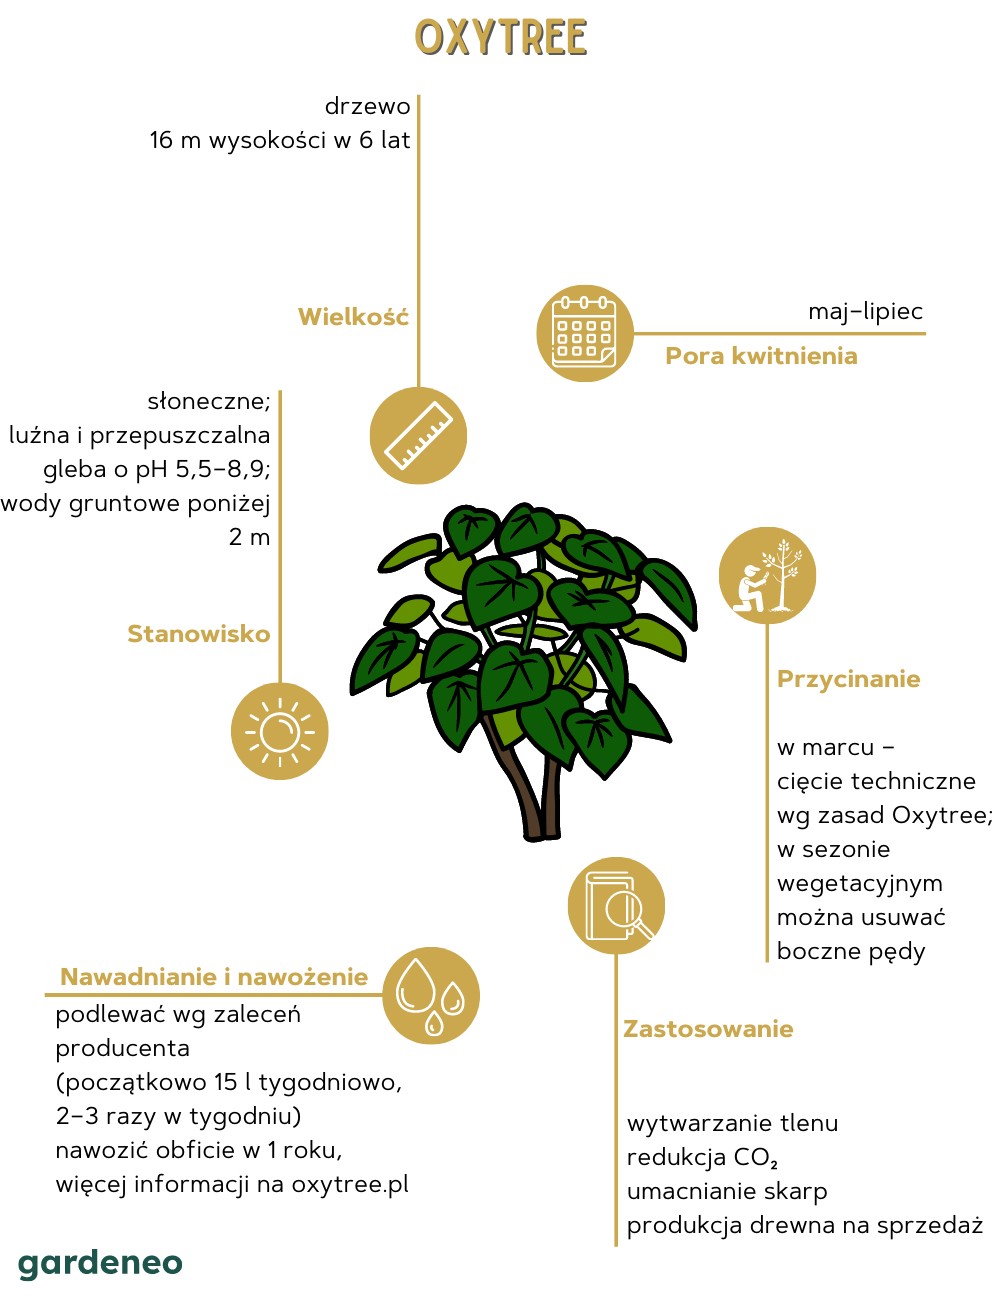 Oxytree w pigułce:
- Drzewo osiągające 16 m wysokości w 6 lat
- Pora kwitnienia to maj–lipiec
- W marcu wykonuje się cięcie techniczne wg zasad Oxytree; w sezonie wegetacyjnym można usuwać boczne pędy
- Zastosowanie: wytwarzanie tlenu, redukcja dwutlenku węgla, umacnianie skarp, produkcja drewna na sprzedaż
- Nawadnianie i nawożenie: podlewać wg zaleceń producenta (początkowo 15 l tygodniowo, 2–3 razy w tygodniu). Nawozić obficie w 1. roku.
- Stanowisko słoneczne, luźna i przepuszczalna gleba o pH 5,5–8,9; wody gruntowe poniżej 2 m.